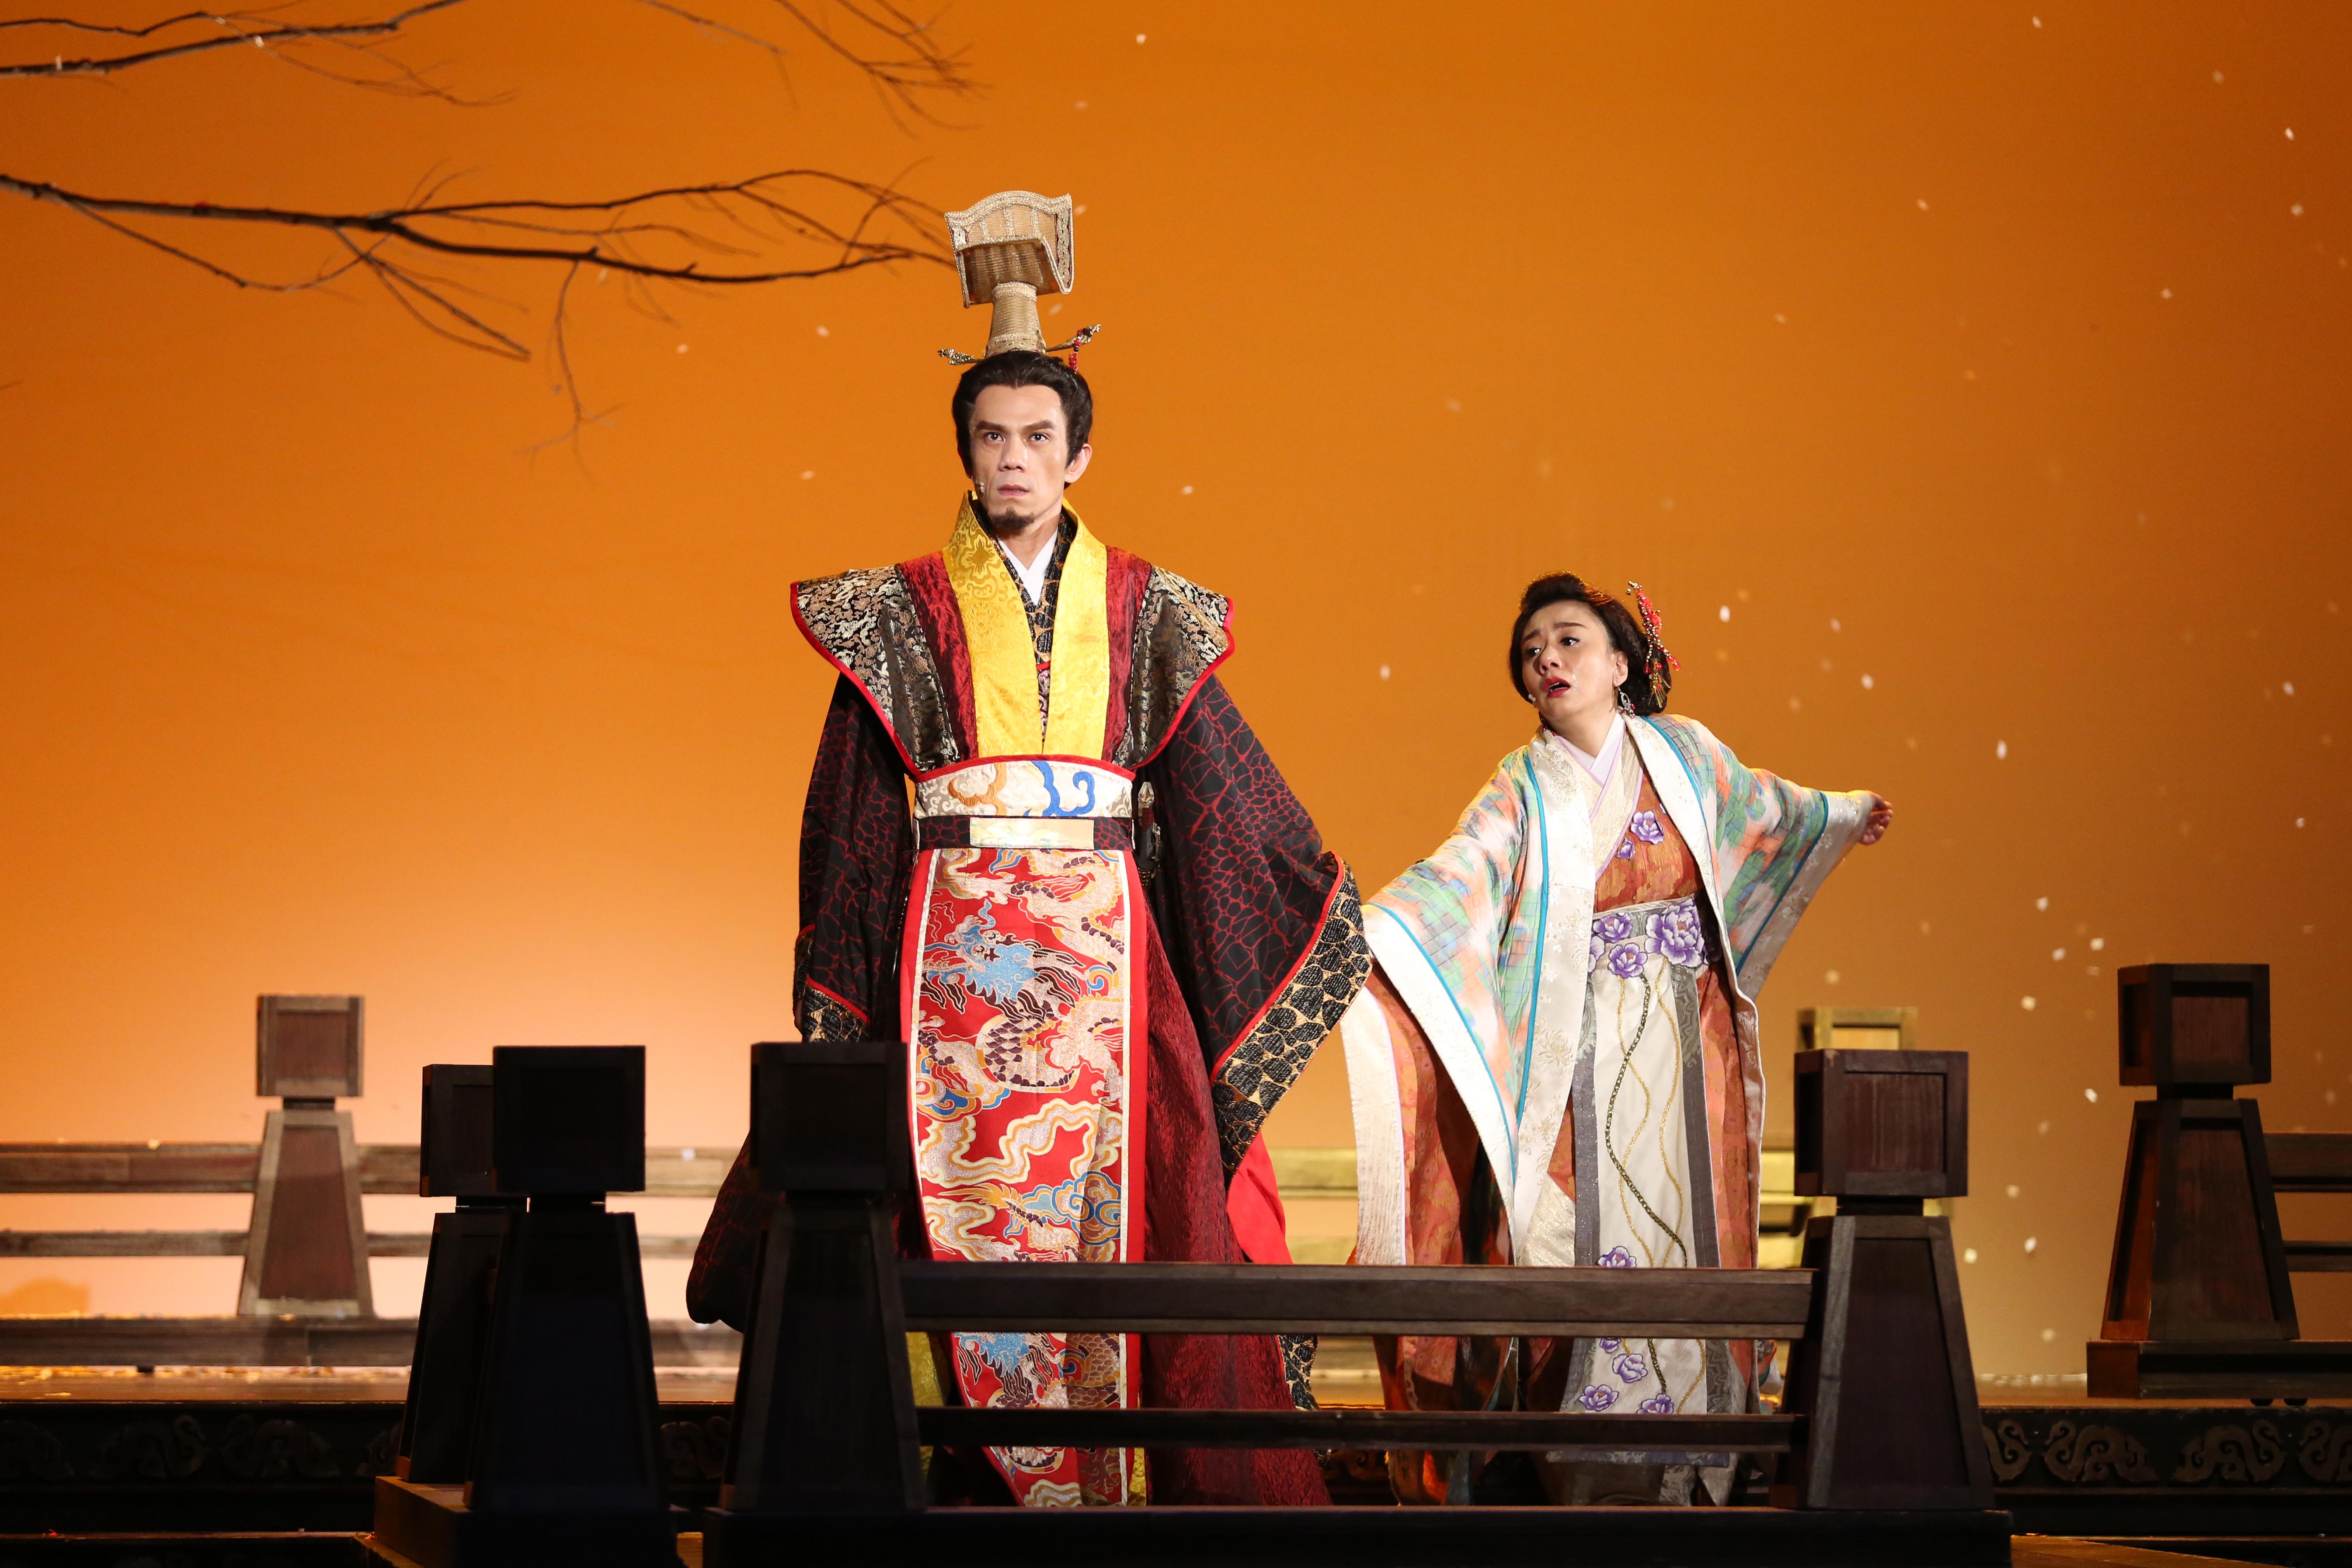 劇中飾演吳王夫差的凱爾與東施(高慧君)有精彩對戲。全民大劇團